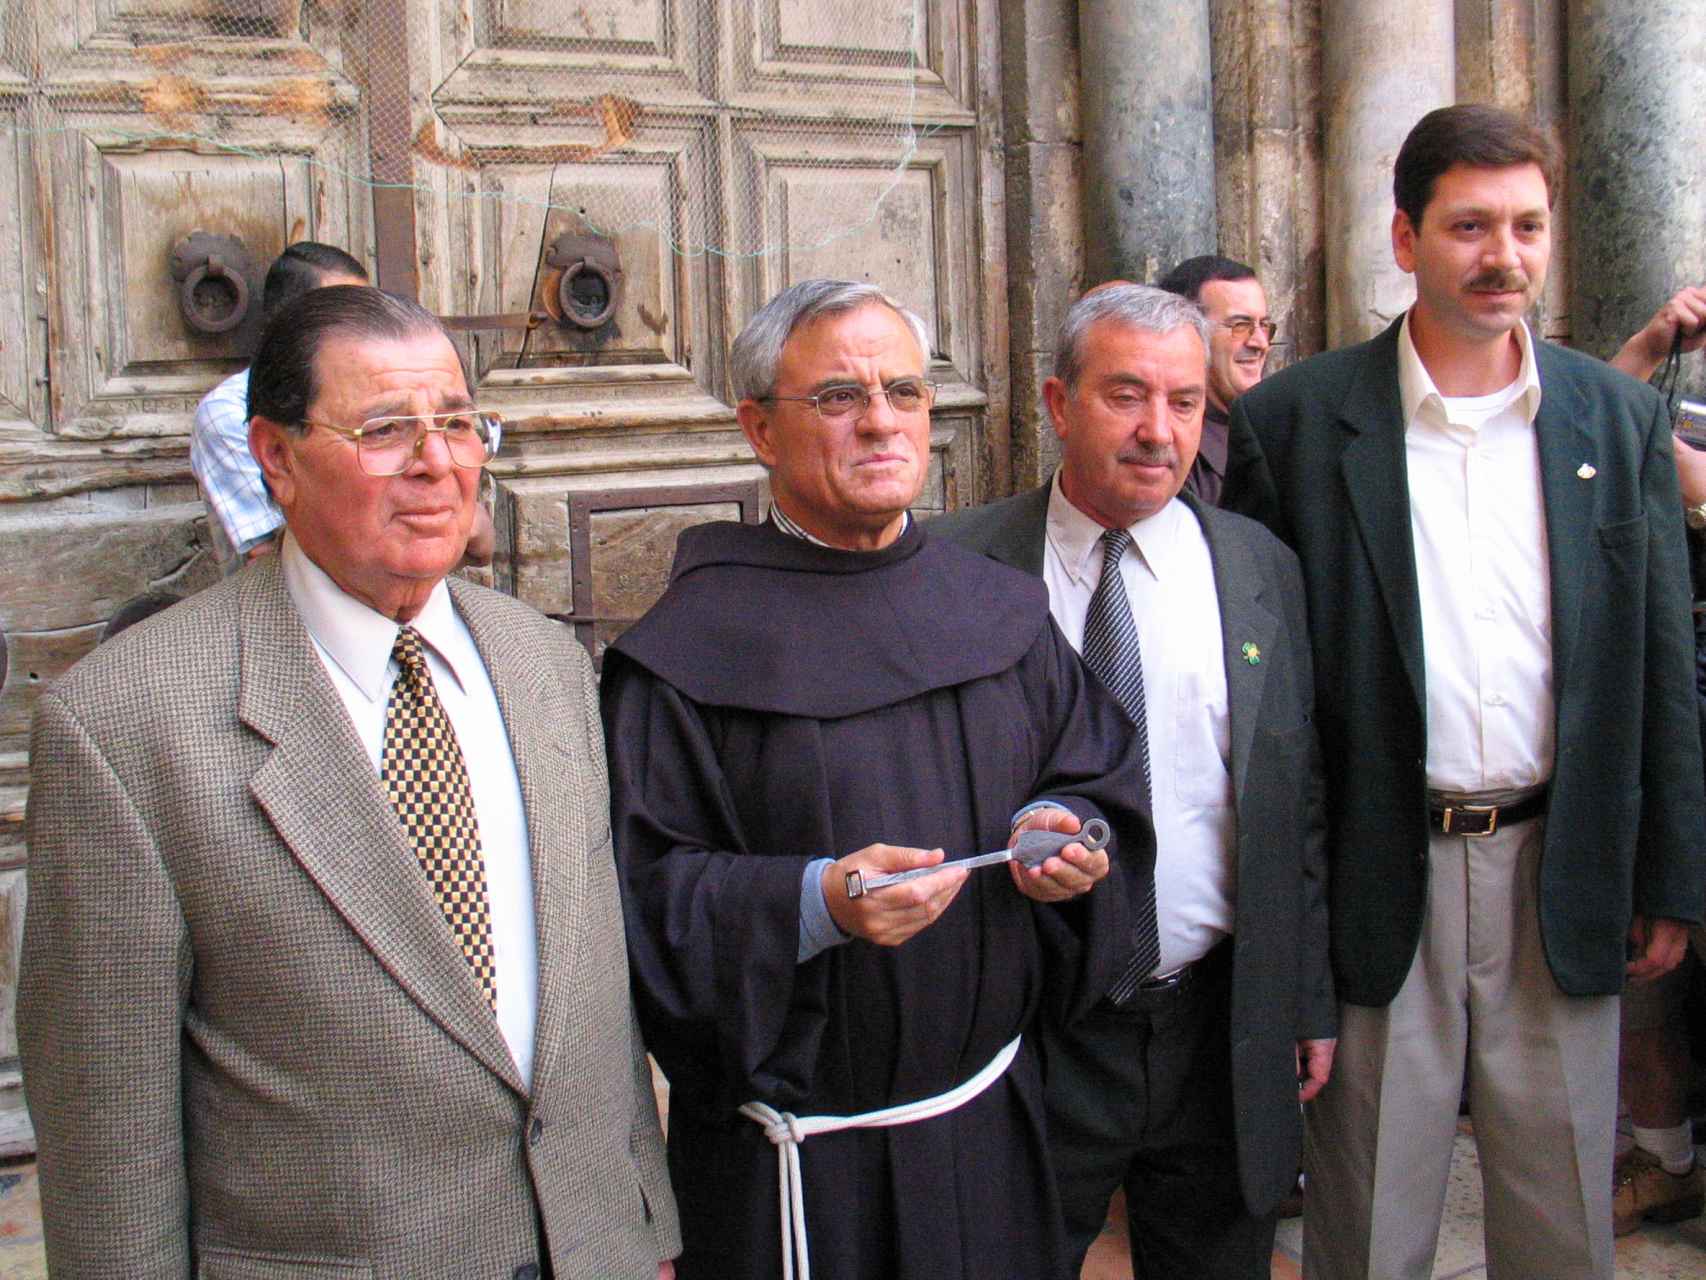 Artemio Vítores con la llave que abre puertas del Santo Sepulcro junto a algunos miembros de la familia musulmana responsable de su custodia.